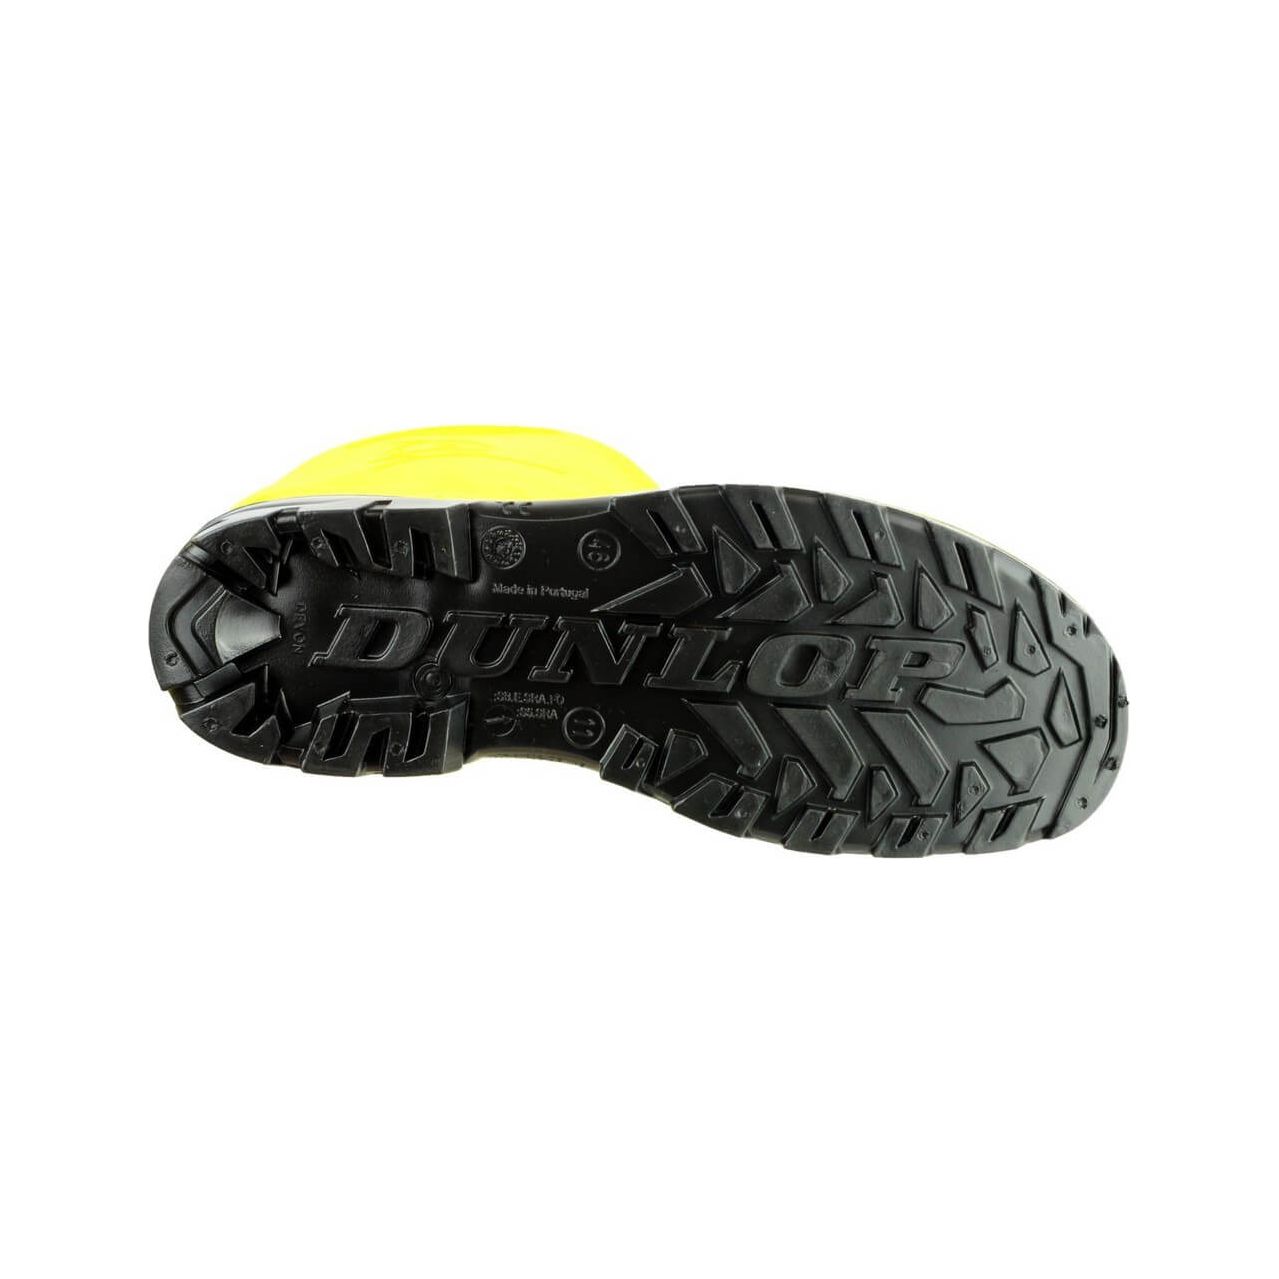 Dunlop Devon Safety Wellies-Yellow-Black-4